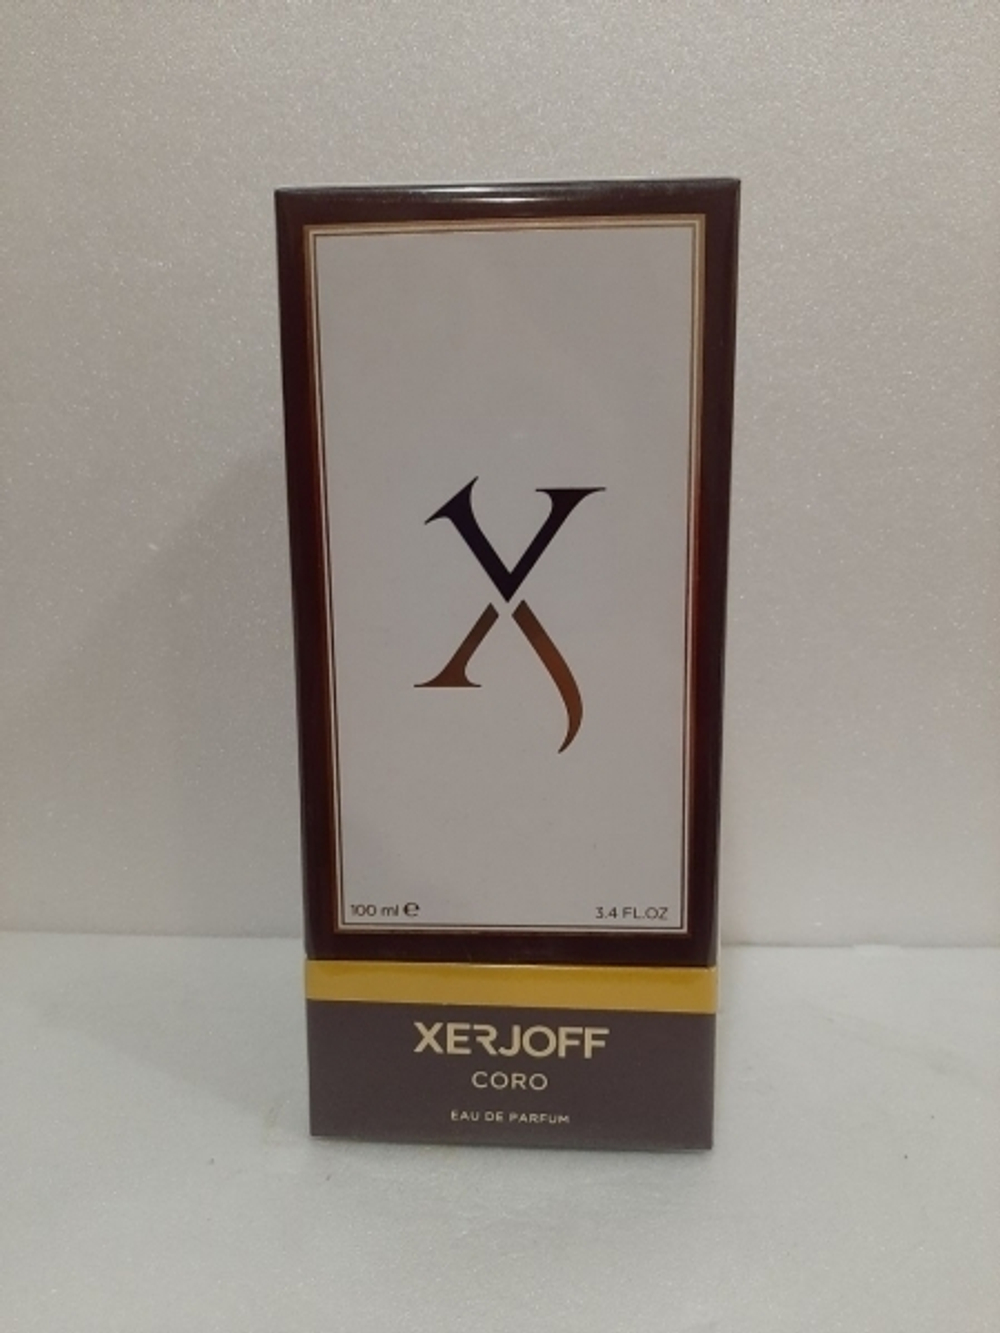 Xerjoff Coro 100ml (duty free парфюмерия)